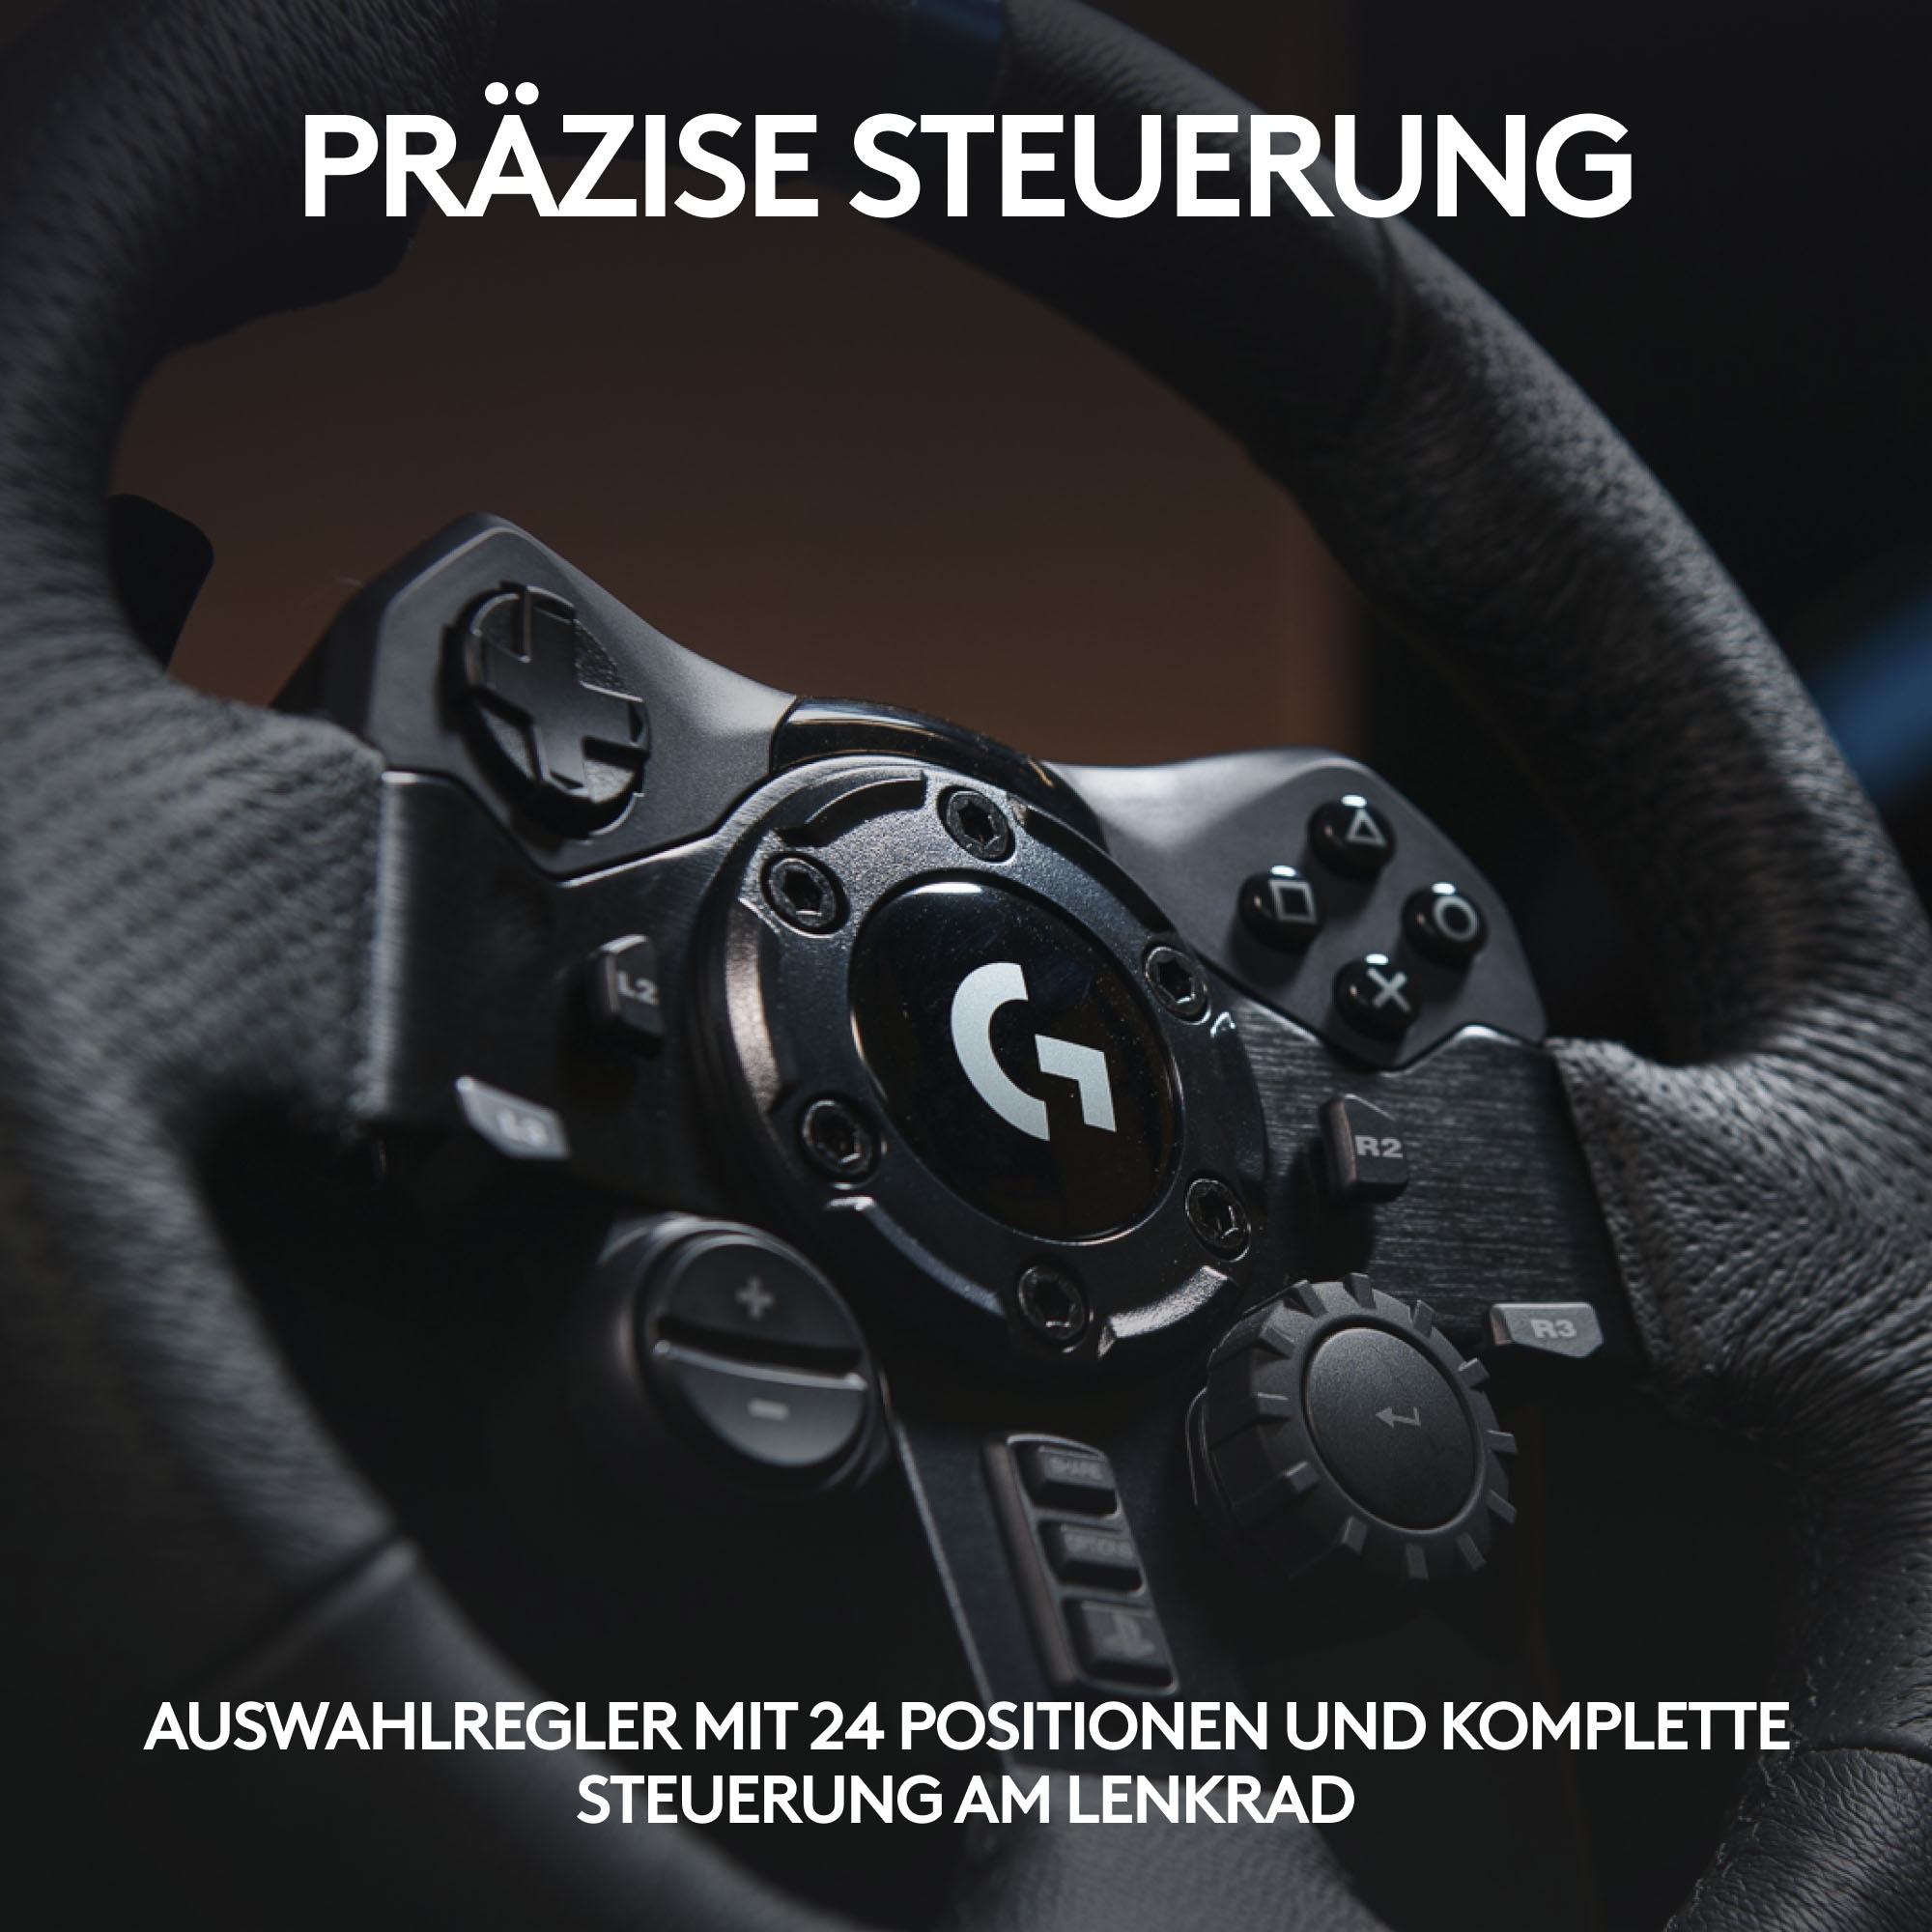 Logitech G Gaming-Lenkrad »G923 für PS4 und PC« ➥ 3 Jahre XXL